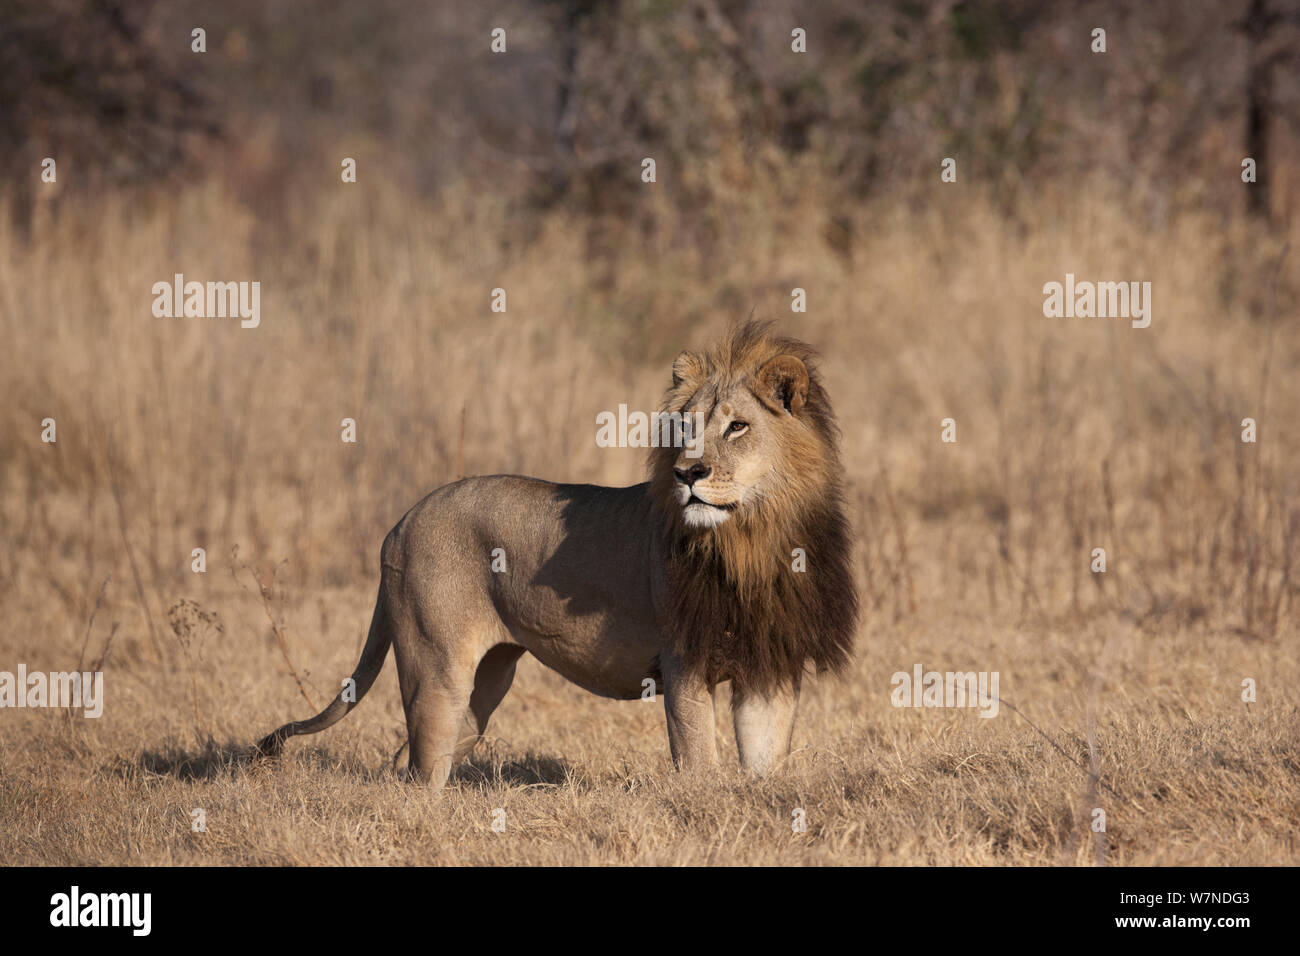 Lionne unique (Panthera leo) femelle avec une crinière ressemblant à celui d'un homme lion debout, alerte Mombo, Moremi, chef de l'Île, Okavango Delta, Botswana. Banque D'Images